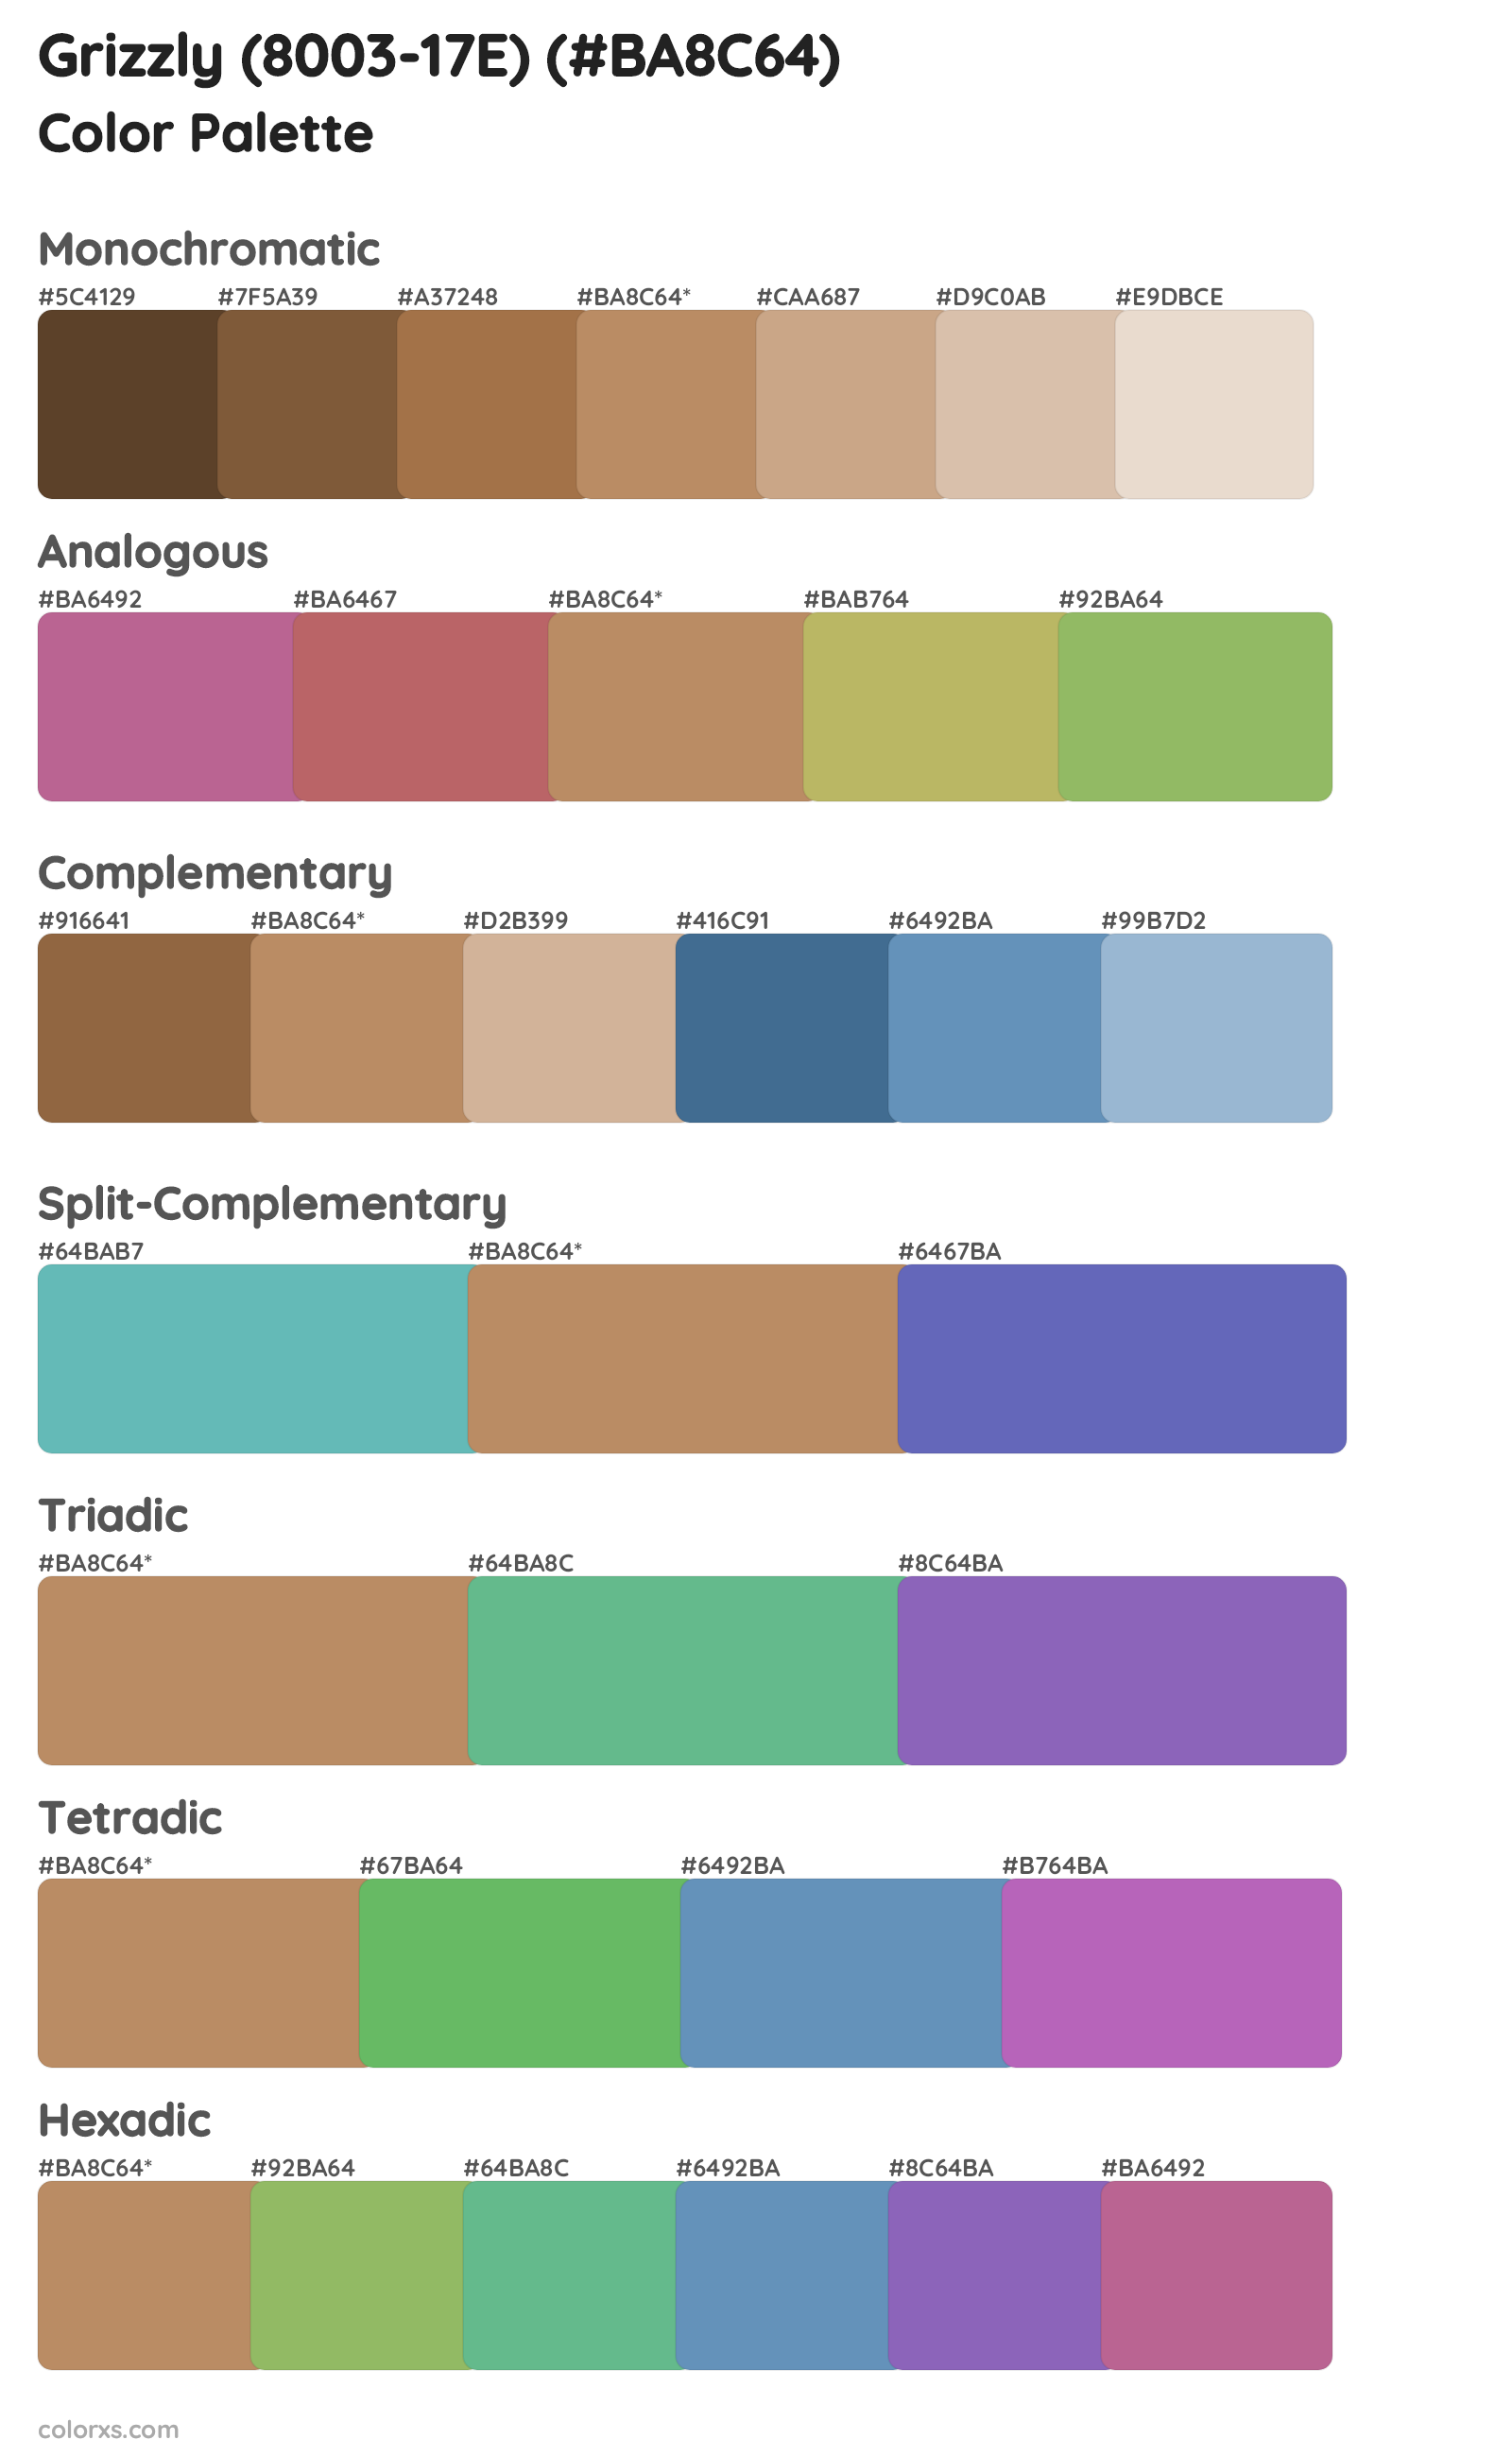 Grizzly (8003-17E) Color Scheme Palettes